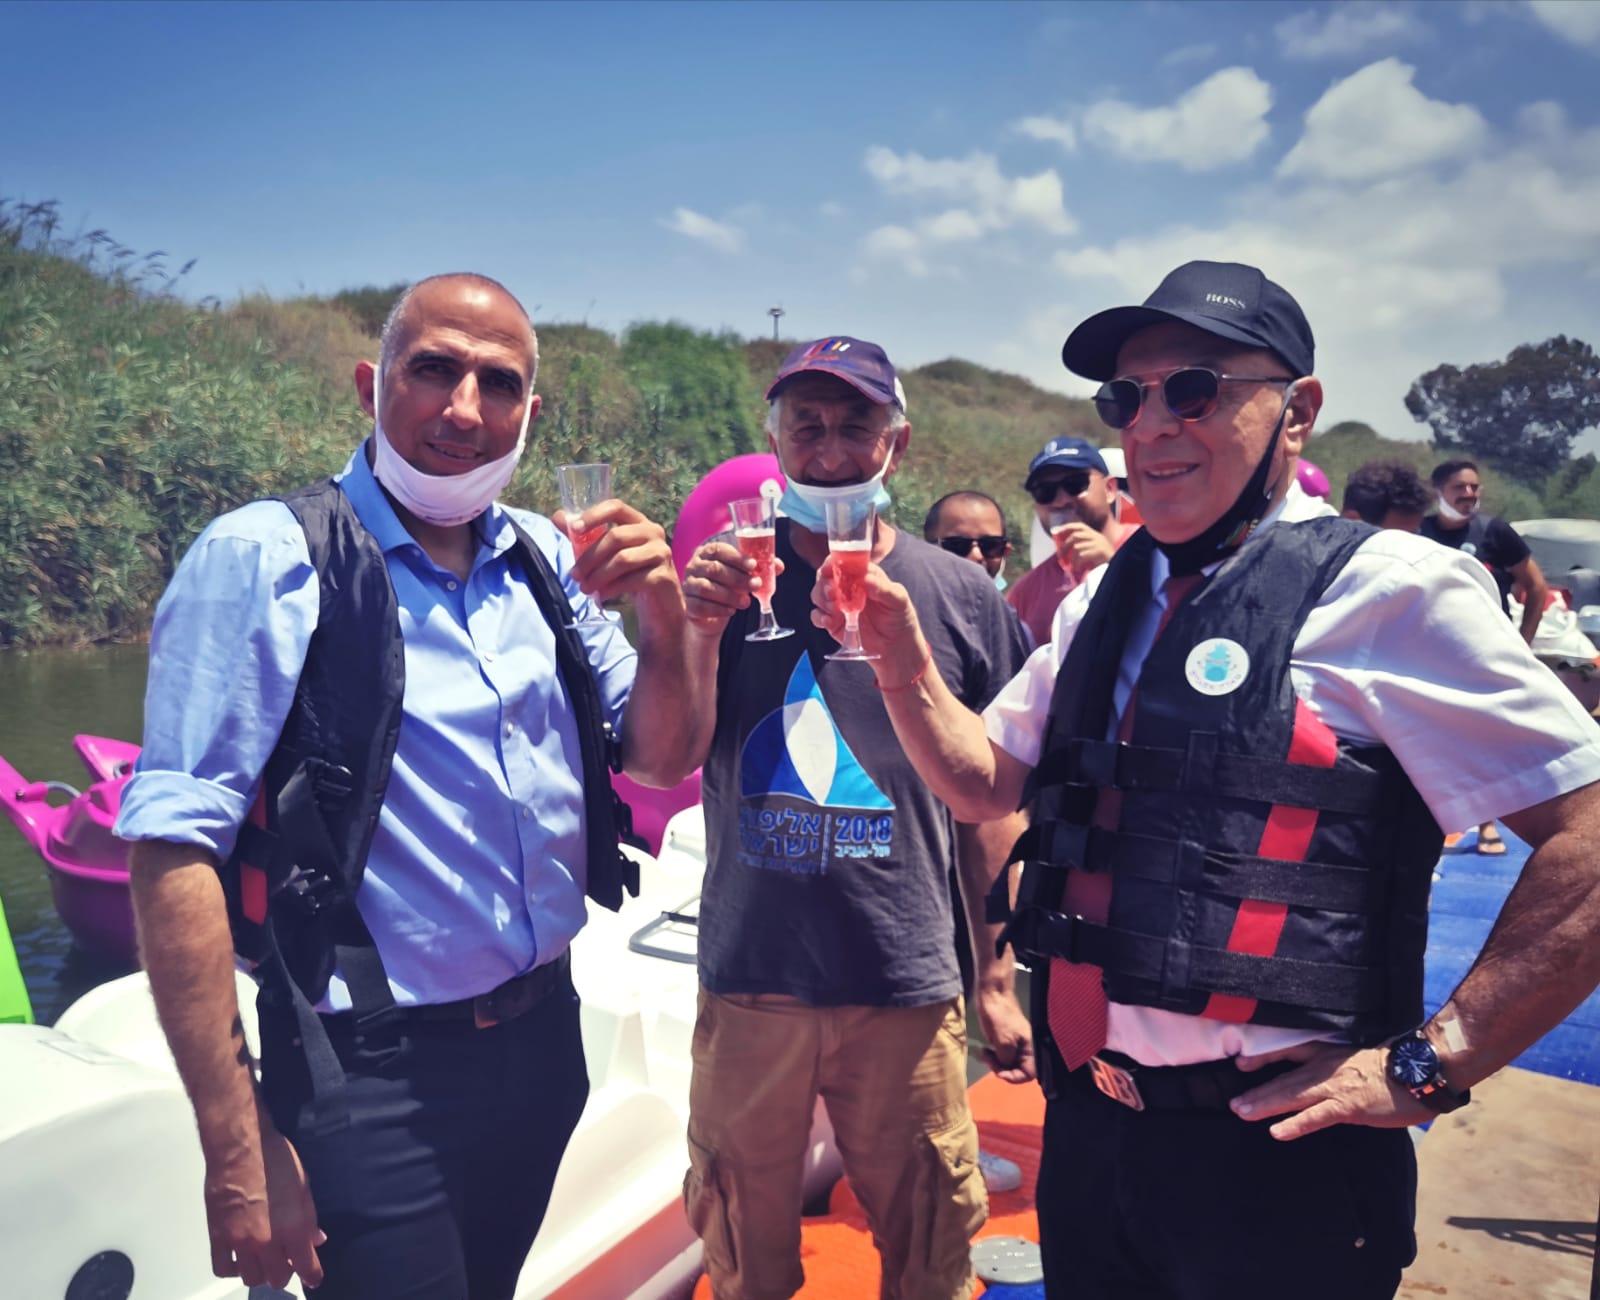 סגן ראש העיר שמעון כצנלסון חונך את השייט בנחל. צילום: תיירות אשדוד